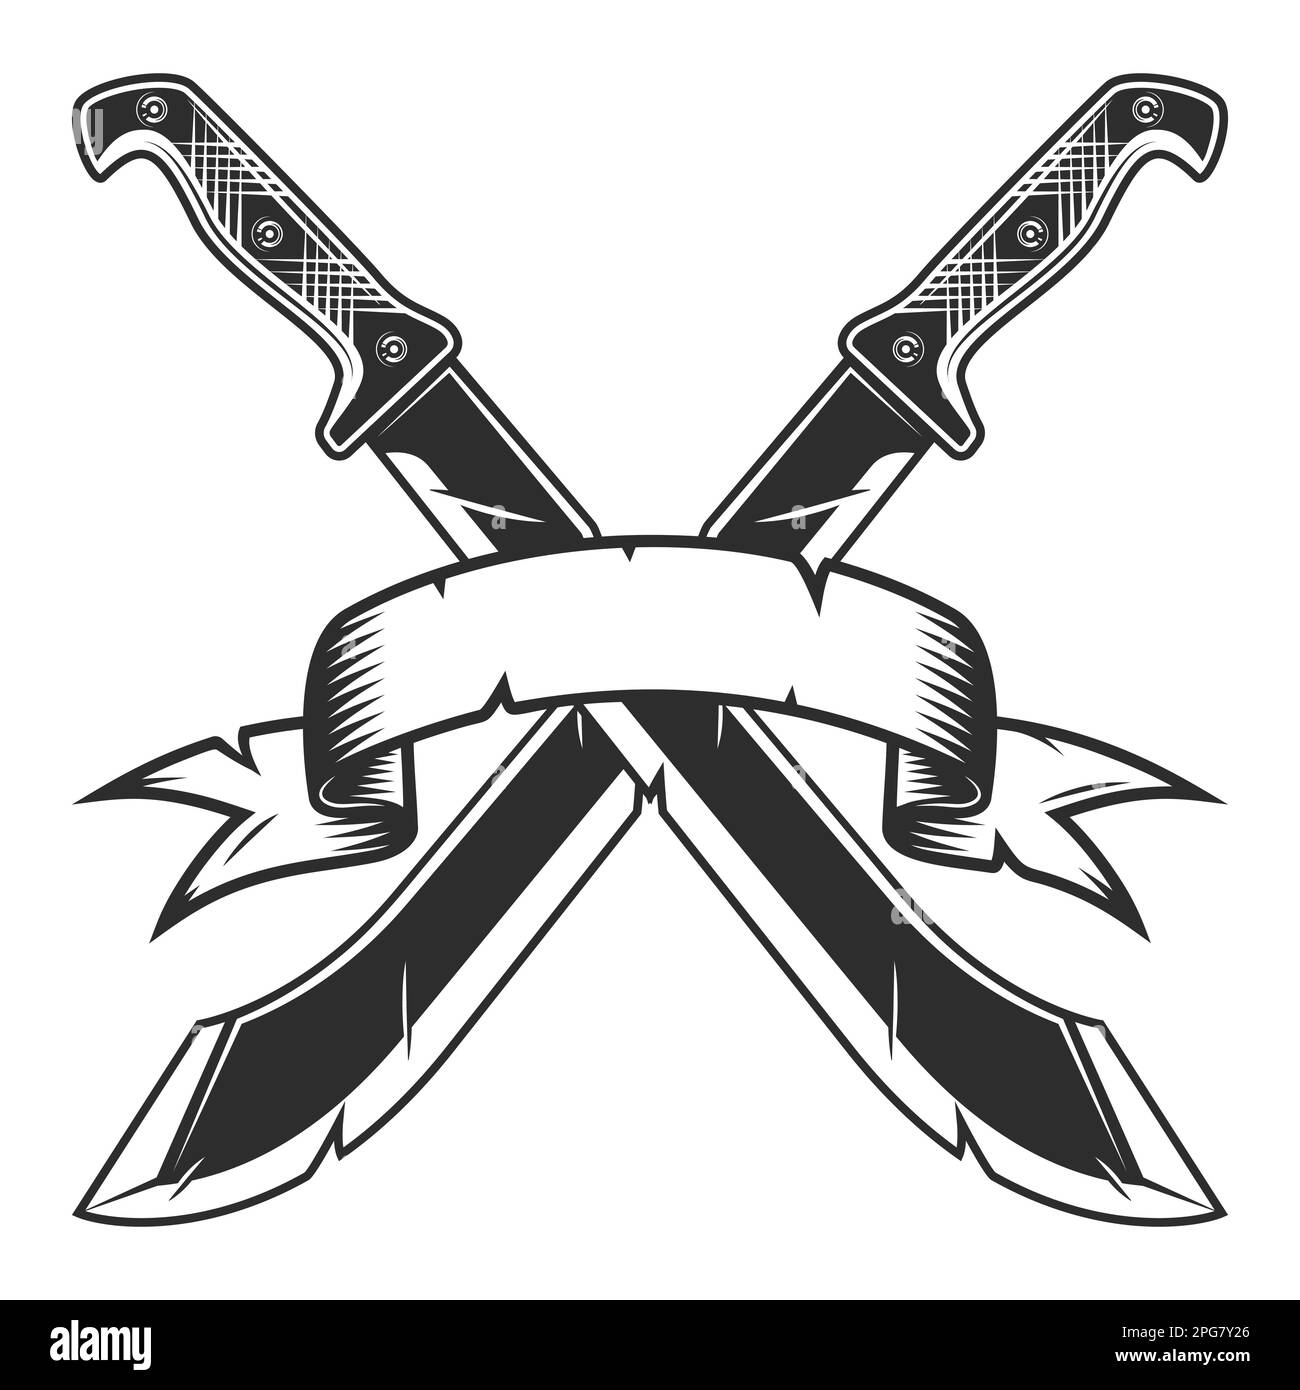 Coltello vettore militare pugnale caccia silhouette di pericolo isolato  icona arma illustrazione Immagine e Vettoriale - Alamy